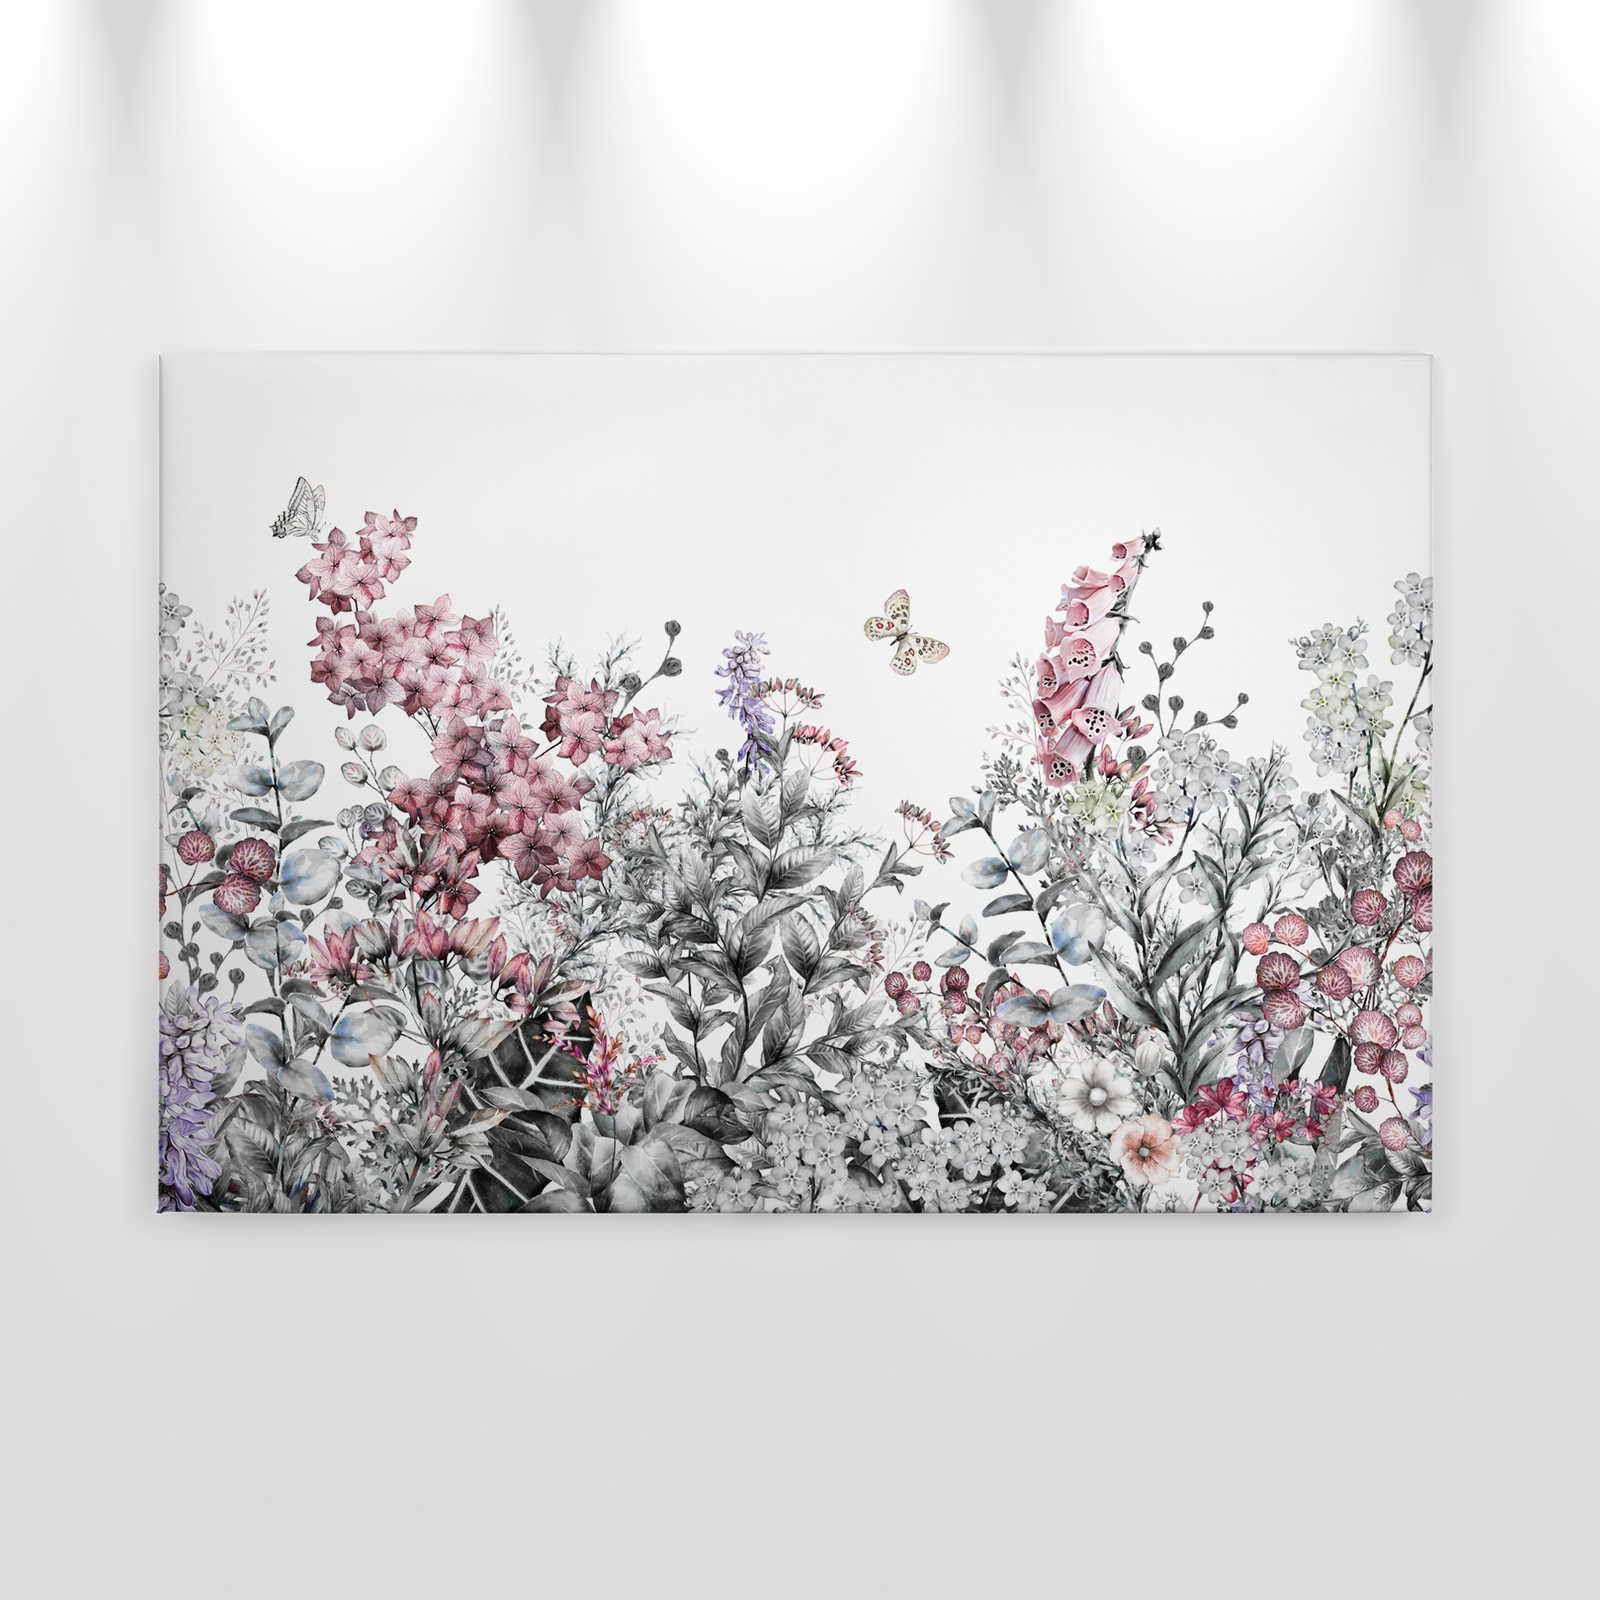             Toile avec des fleurs peintes simplement - 0,90 m x 0,60 m
        